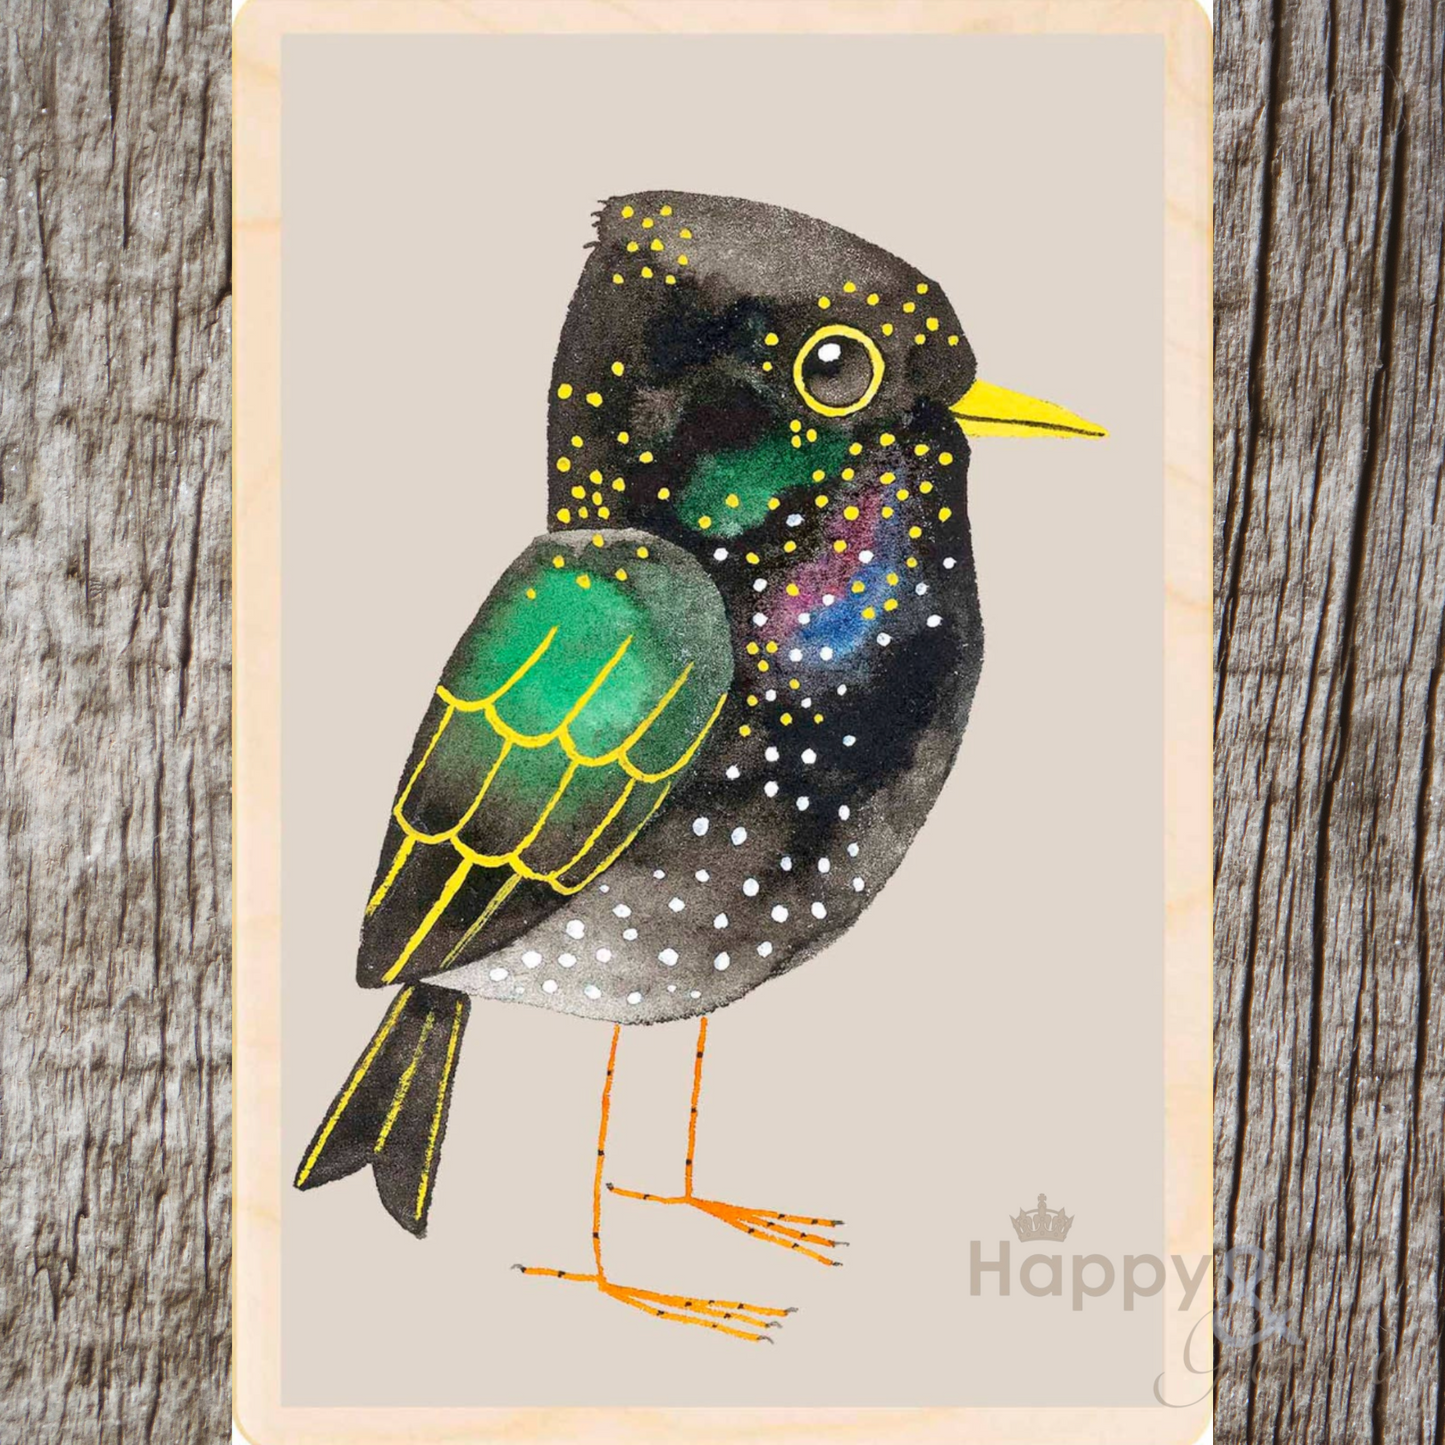 Wooden bird postcard by Matt Sewell